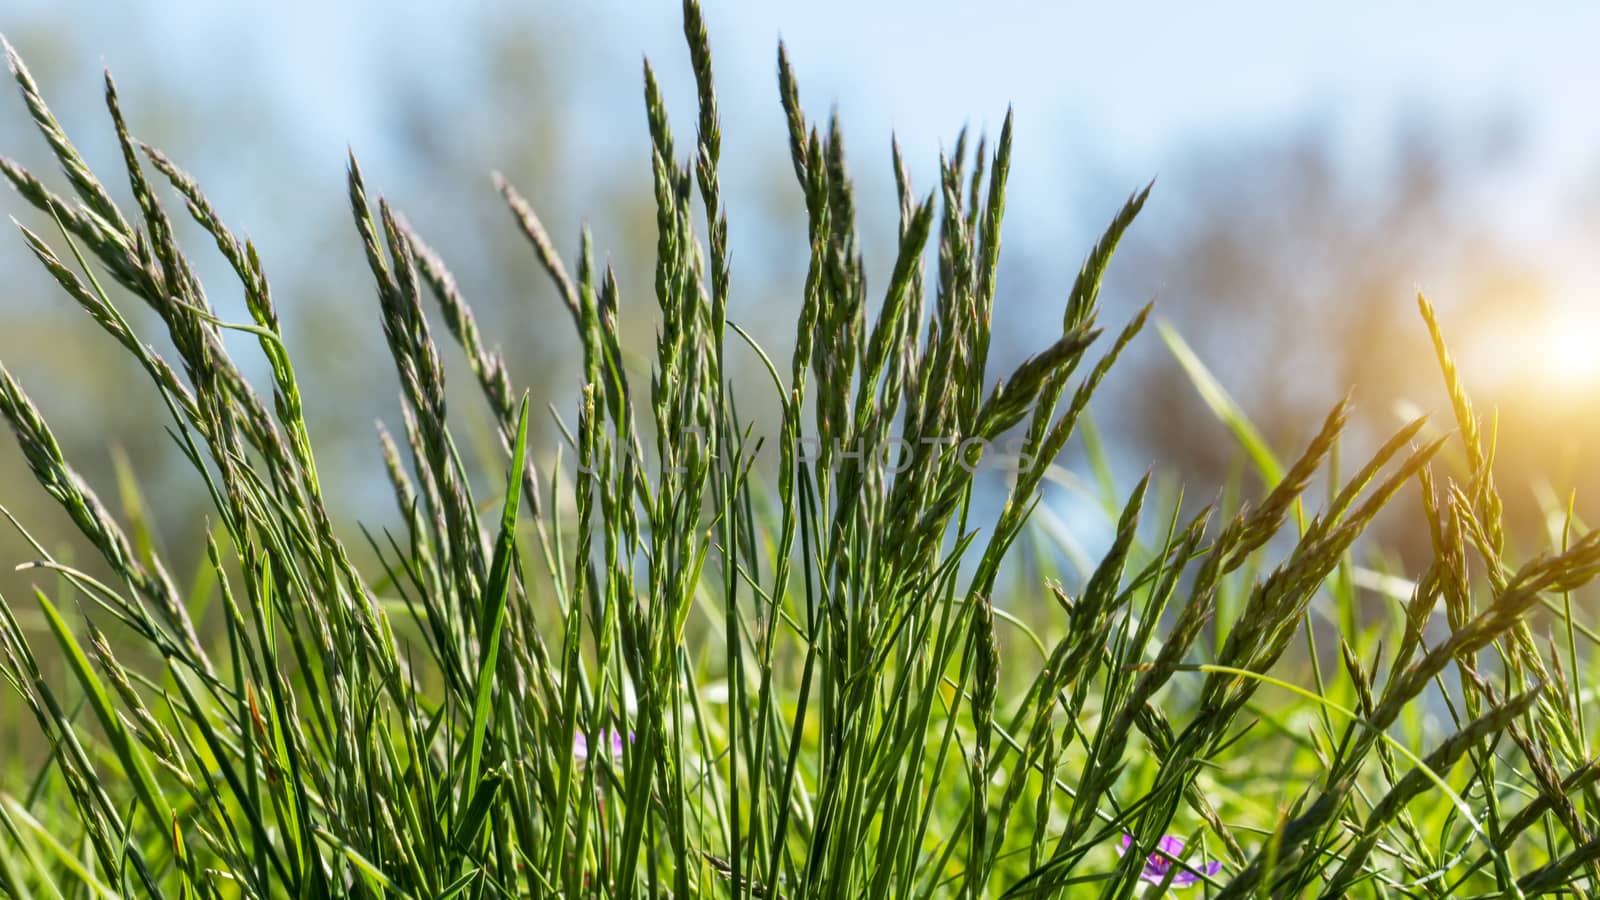 Flowering grass in detail - Allergens - Allergy